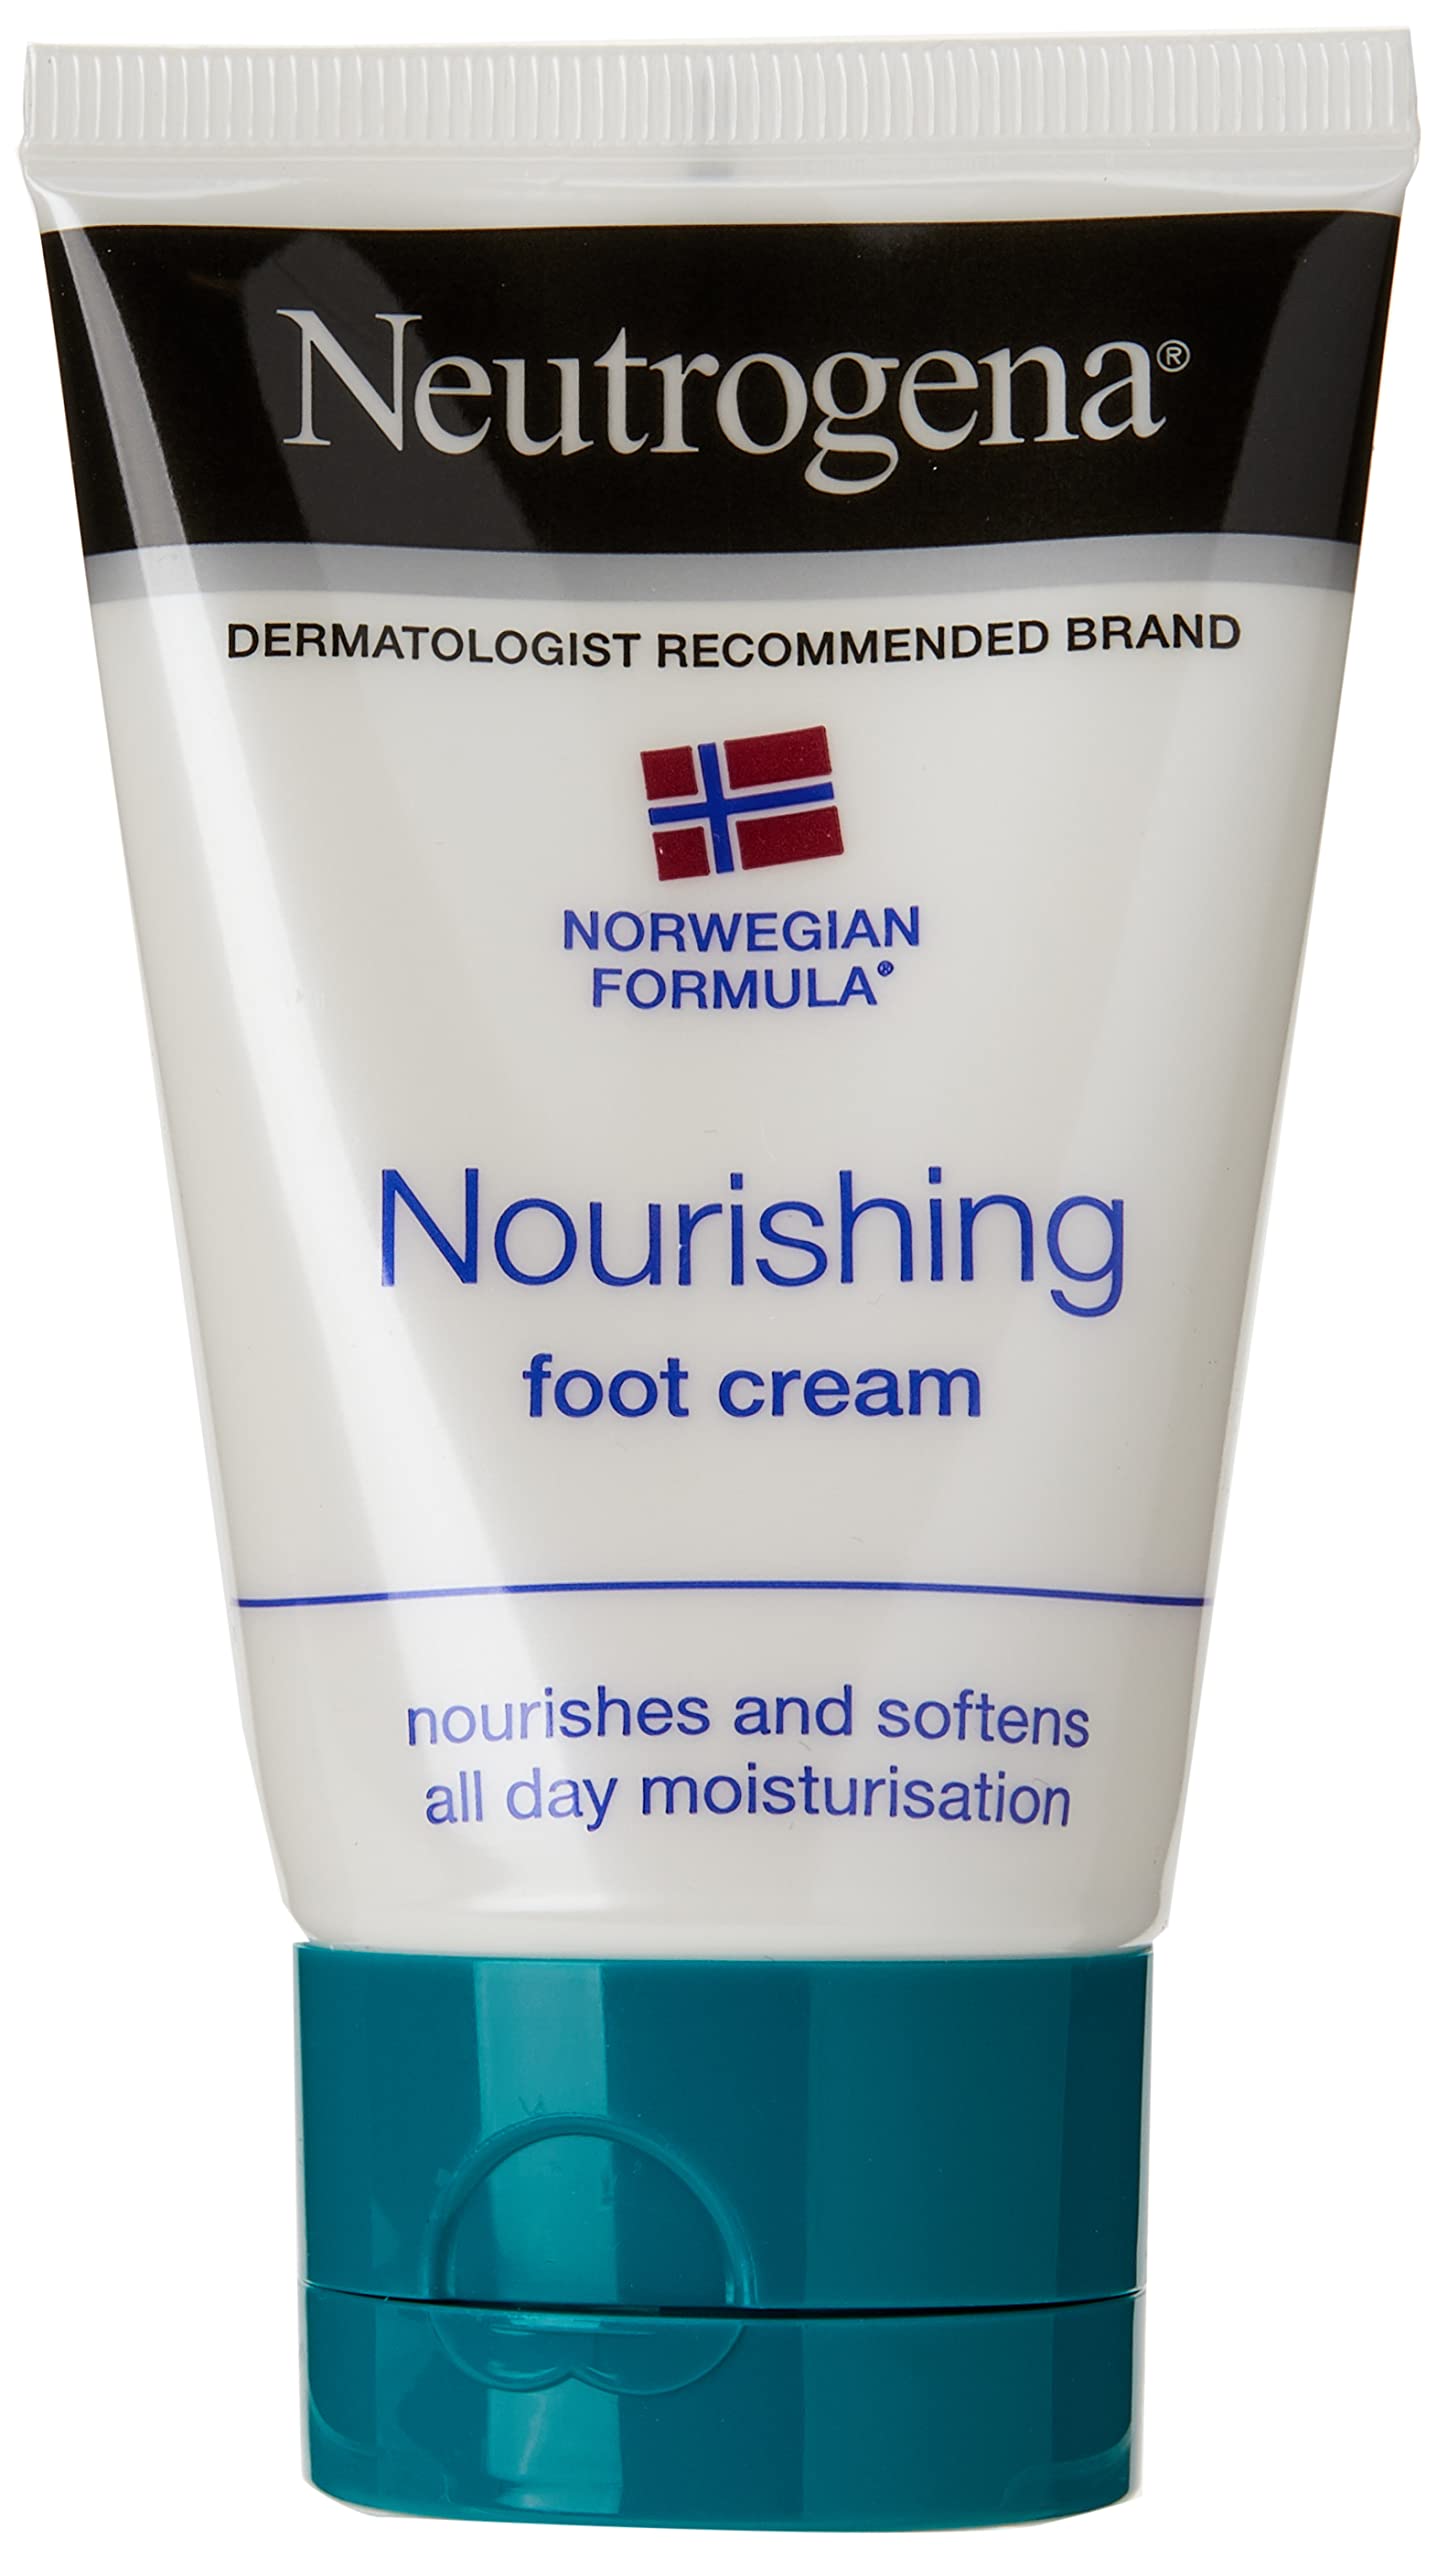 Neutrogena Norwegian Formula Moisturizing Foot Cream, 2 Oz.